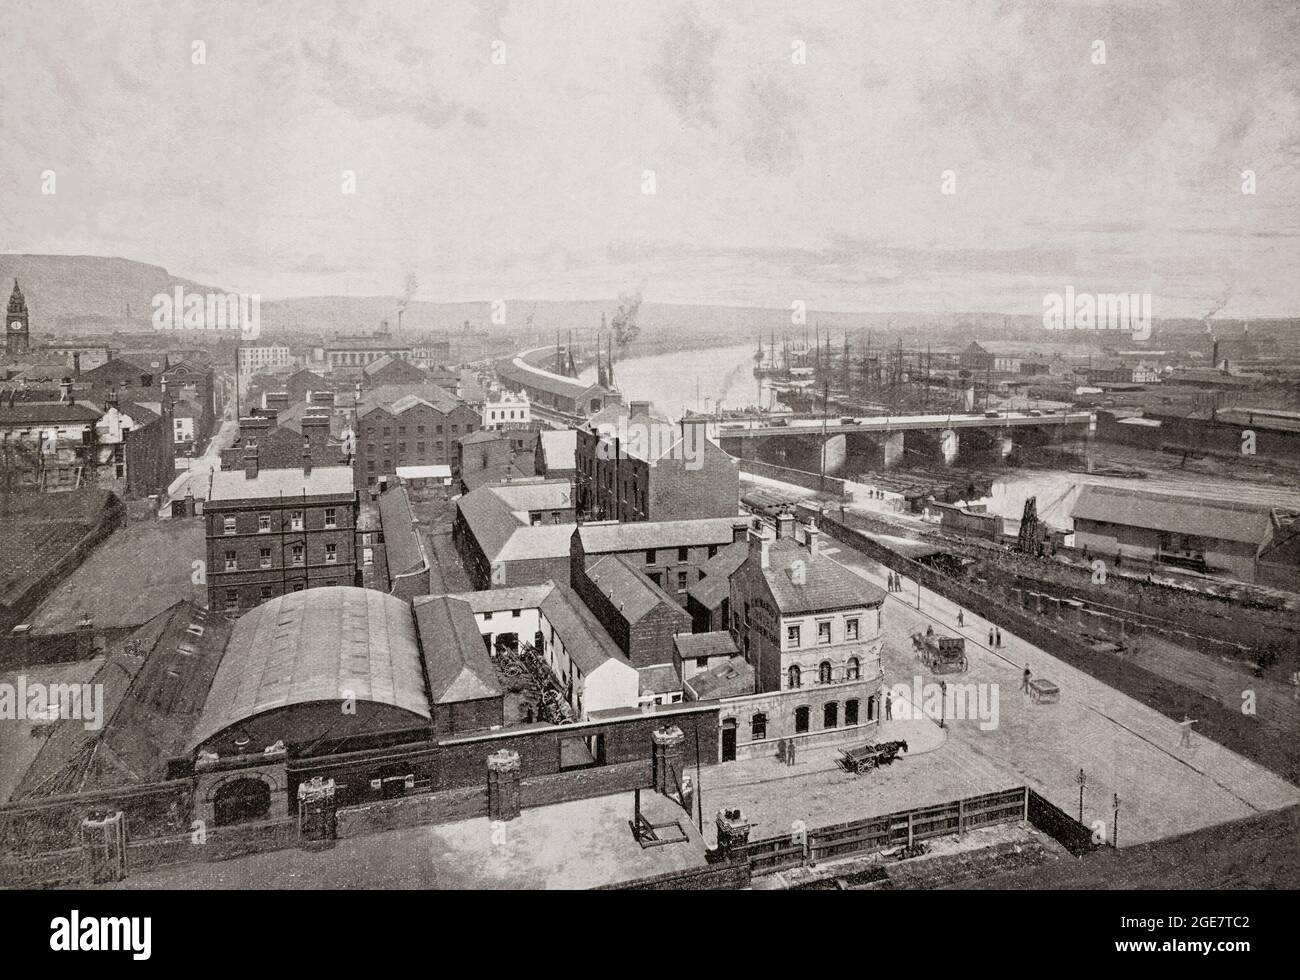 Der dritte von drei Panoramasicht aus dem späten 19. Jahrhundert auf Belfast, die Hauptstadt und größte Stadt Nordirlands, am Ufer des Flusses Lagan an an der Ostküste. Belfast war ein wichtiger Hafen, der eine wichtige Rolle in der industriellen Revolution in Irland spielte und ihm den Spitznamen „Linenopolis“ als ein wichtiges Zentrum der irischen Leinenproduktion, Tabakverarbeitung und Seilherstellung einbrachte. Der Schiffbau war auch eine Schlüsselindustrie; die Harland- und Wolff-Werft, die die RMS Titanic gebaut hat, war die größte Werft der Welt und kann an der Flussseite hinter der Queens Bridge gesehen werden. Stockfoto